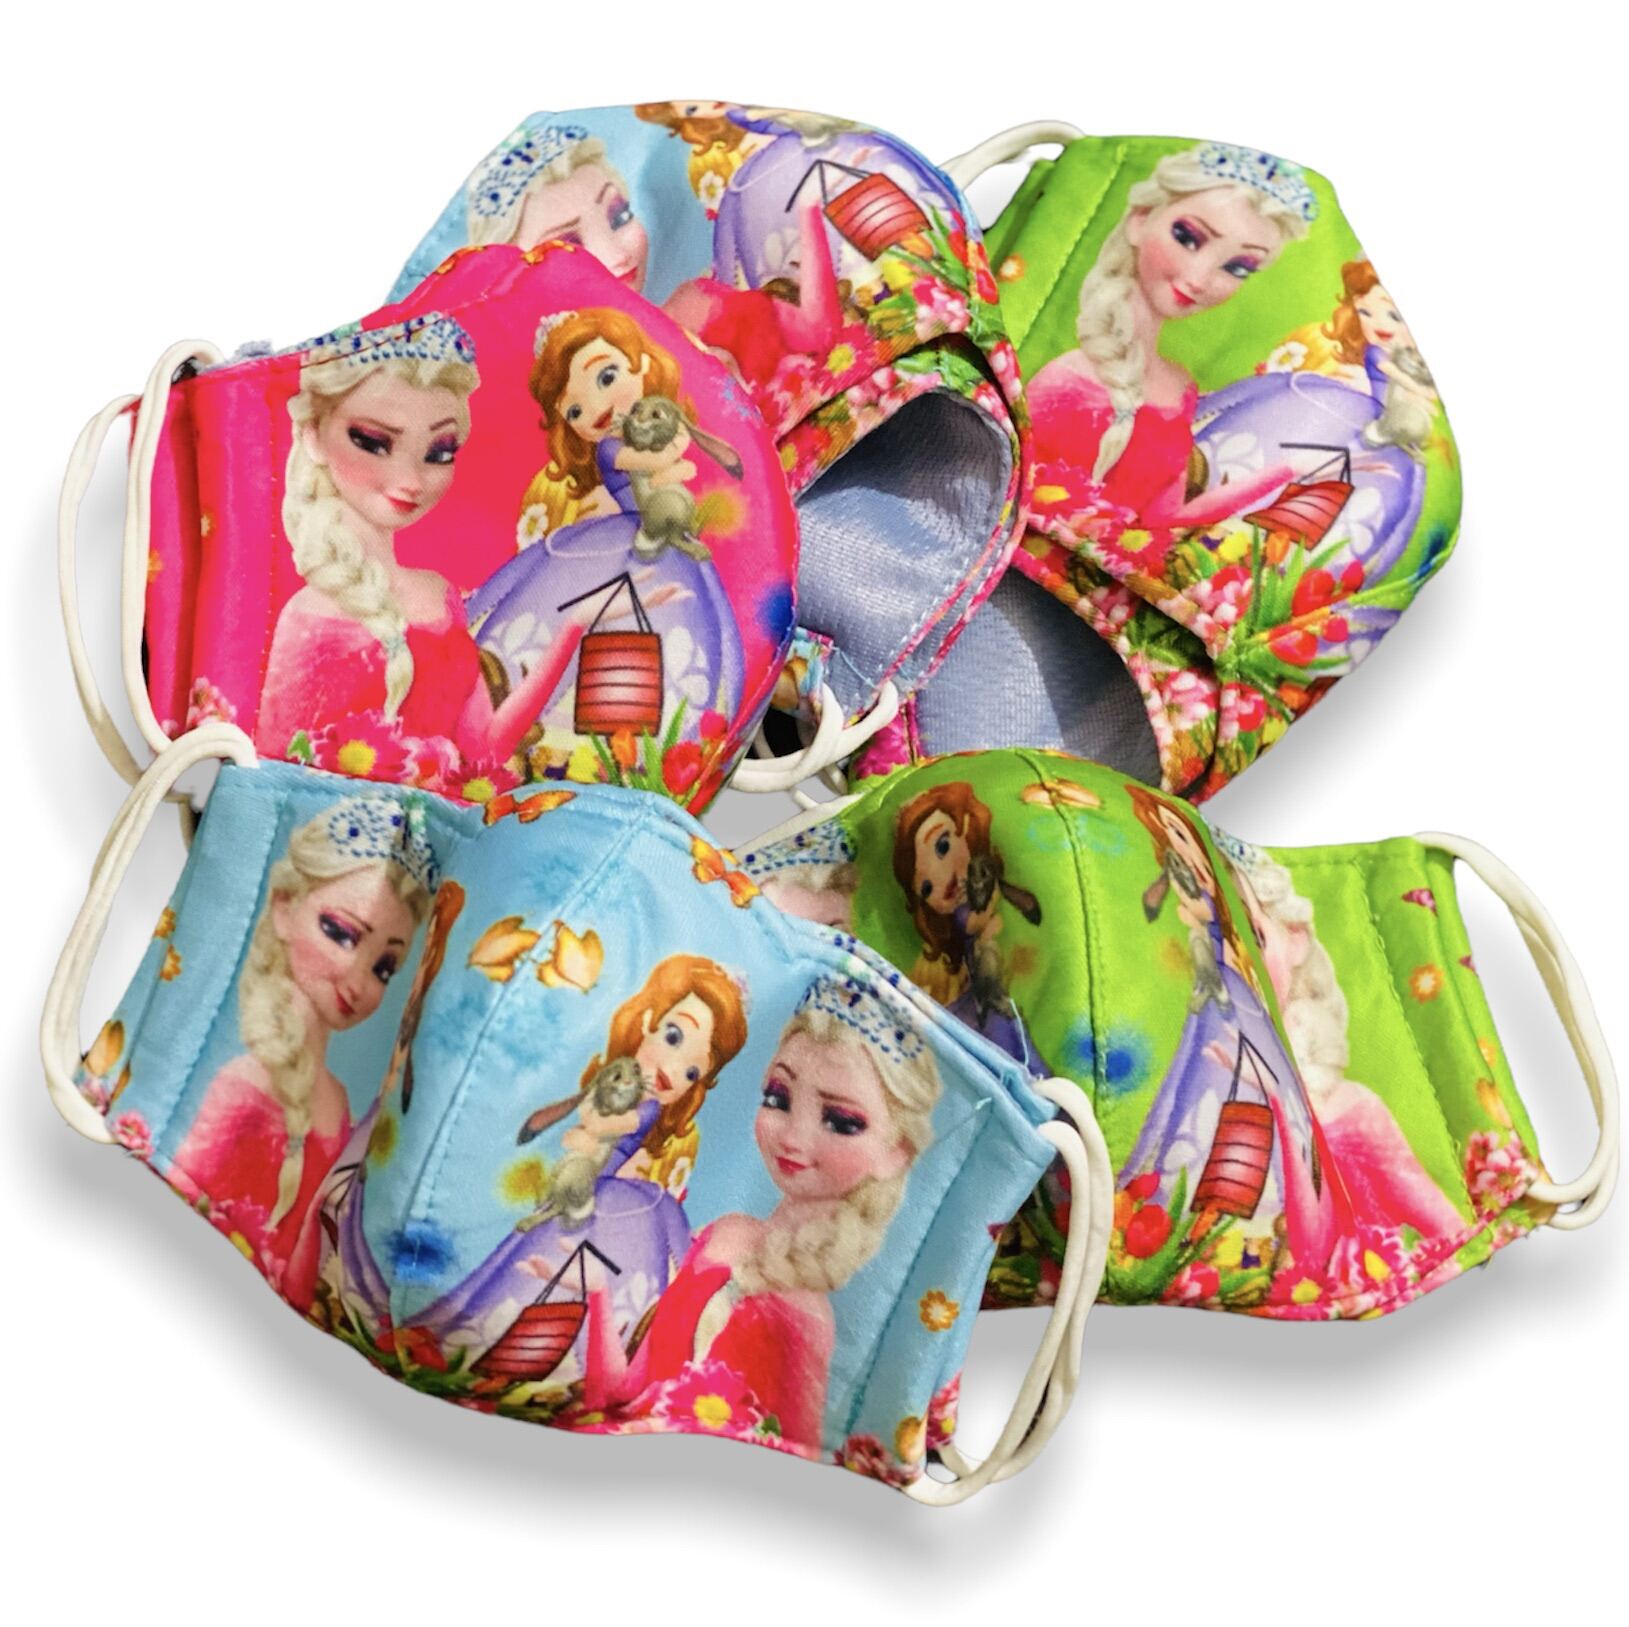 Khẩu trang Elsa Anna công chúa cho bé, khẩu trang vải 4 lớp trẻ em